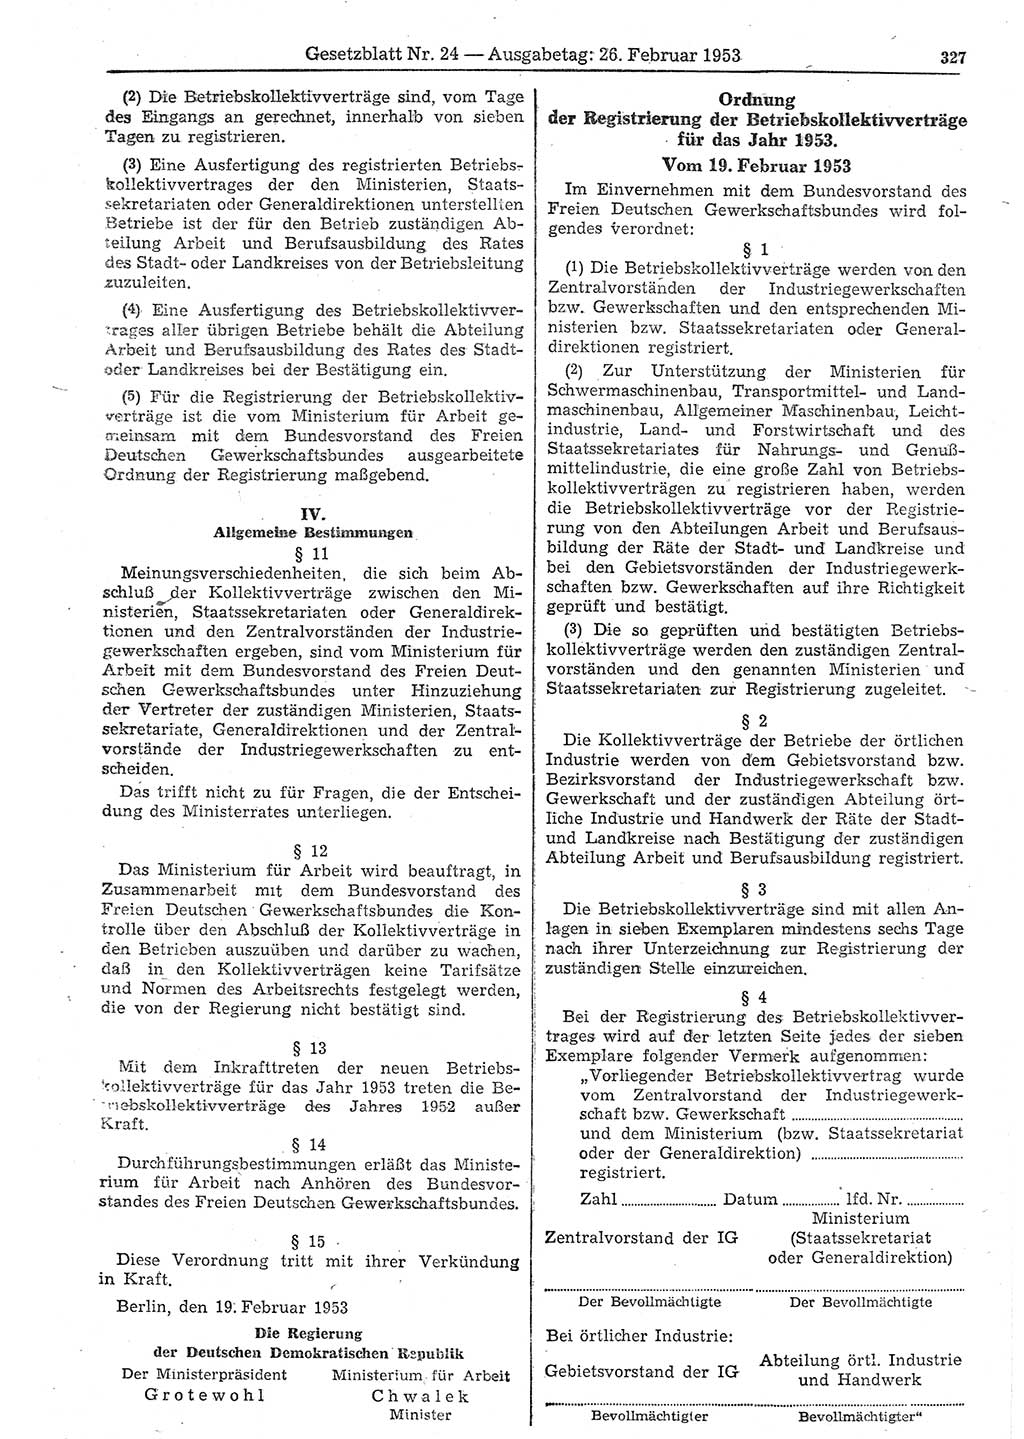 Gesetzblatt (GBl.) der Deutschen Demokratischen Republik (DDR) 1953, Seite 327 (GBl. DDR 1953, S. 327)